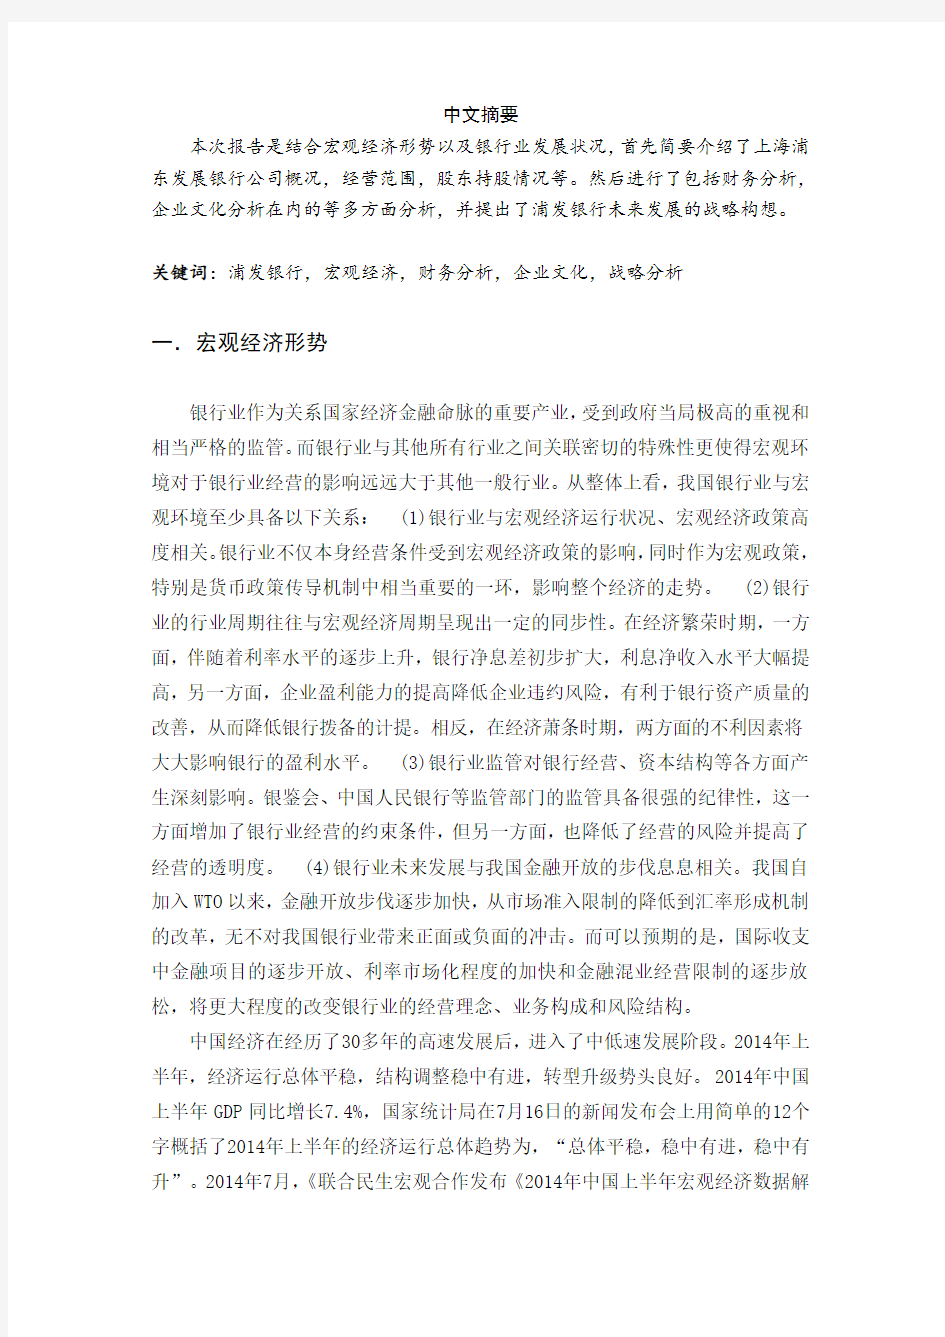 上海浦东发展银行发展分析报告(1)